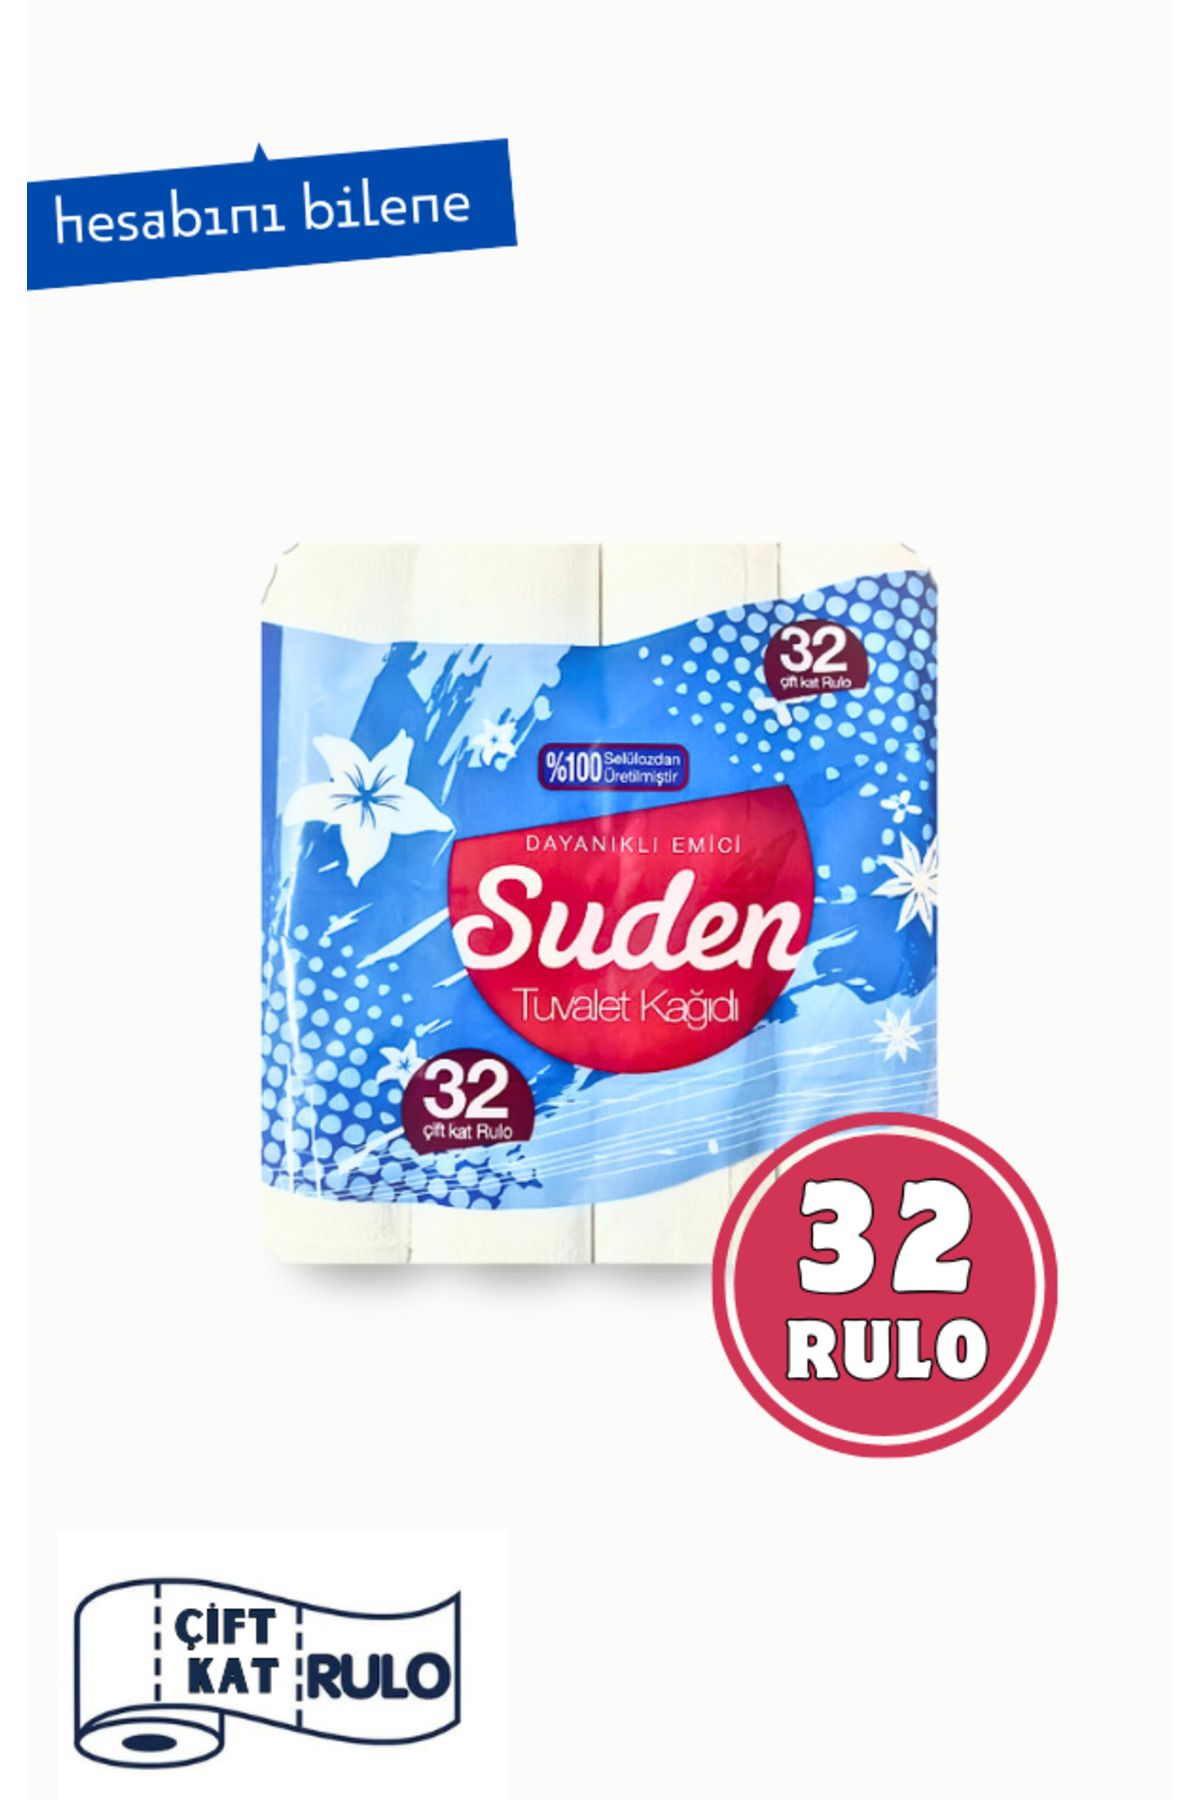 SUDEN Avantaj Paket Tuvalet Kağıdı 32 Rulo